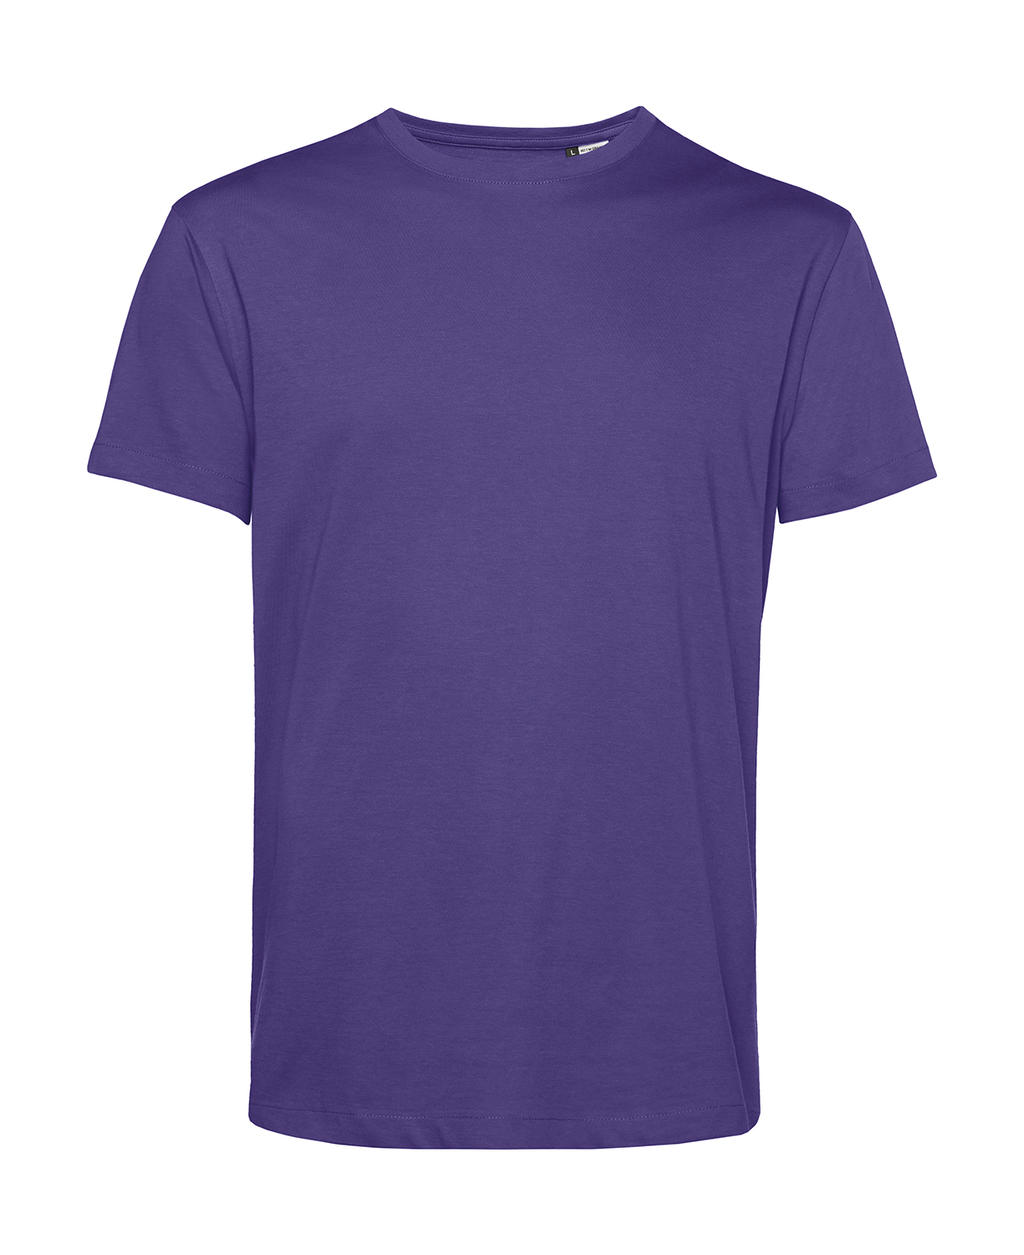 Tričko #organic inspire E150 - radiant purple